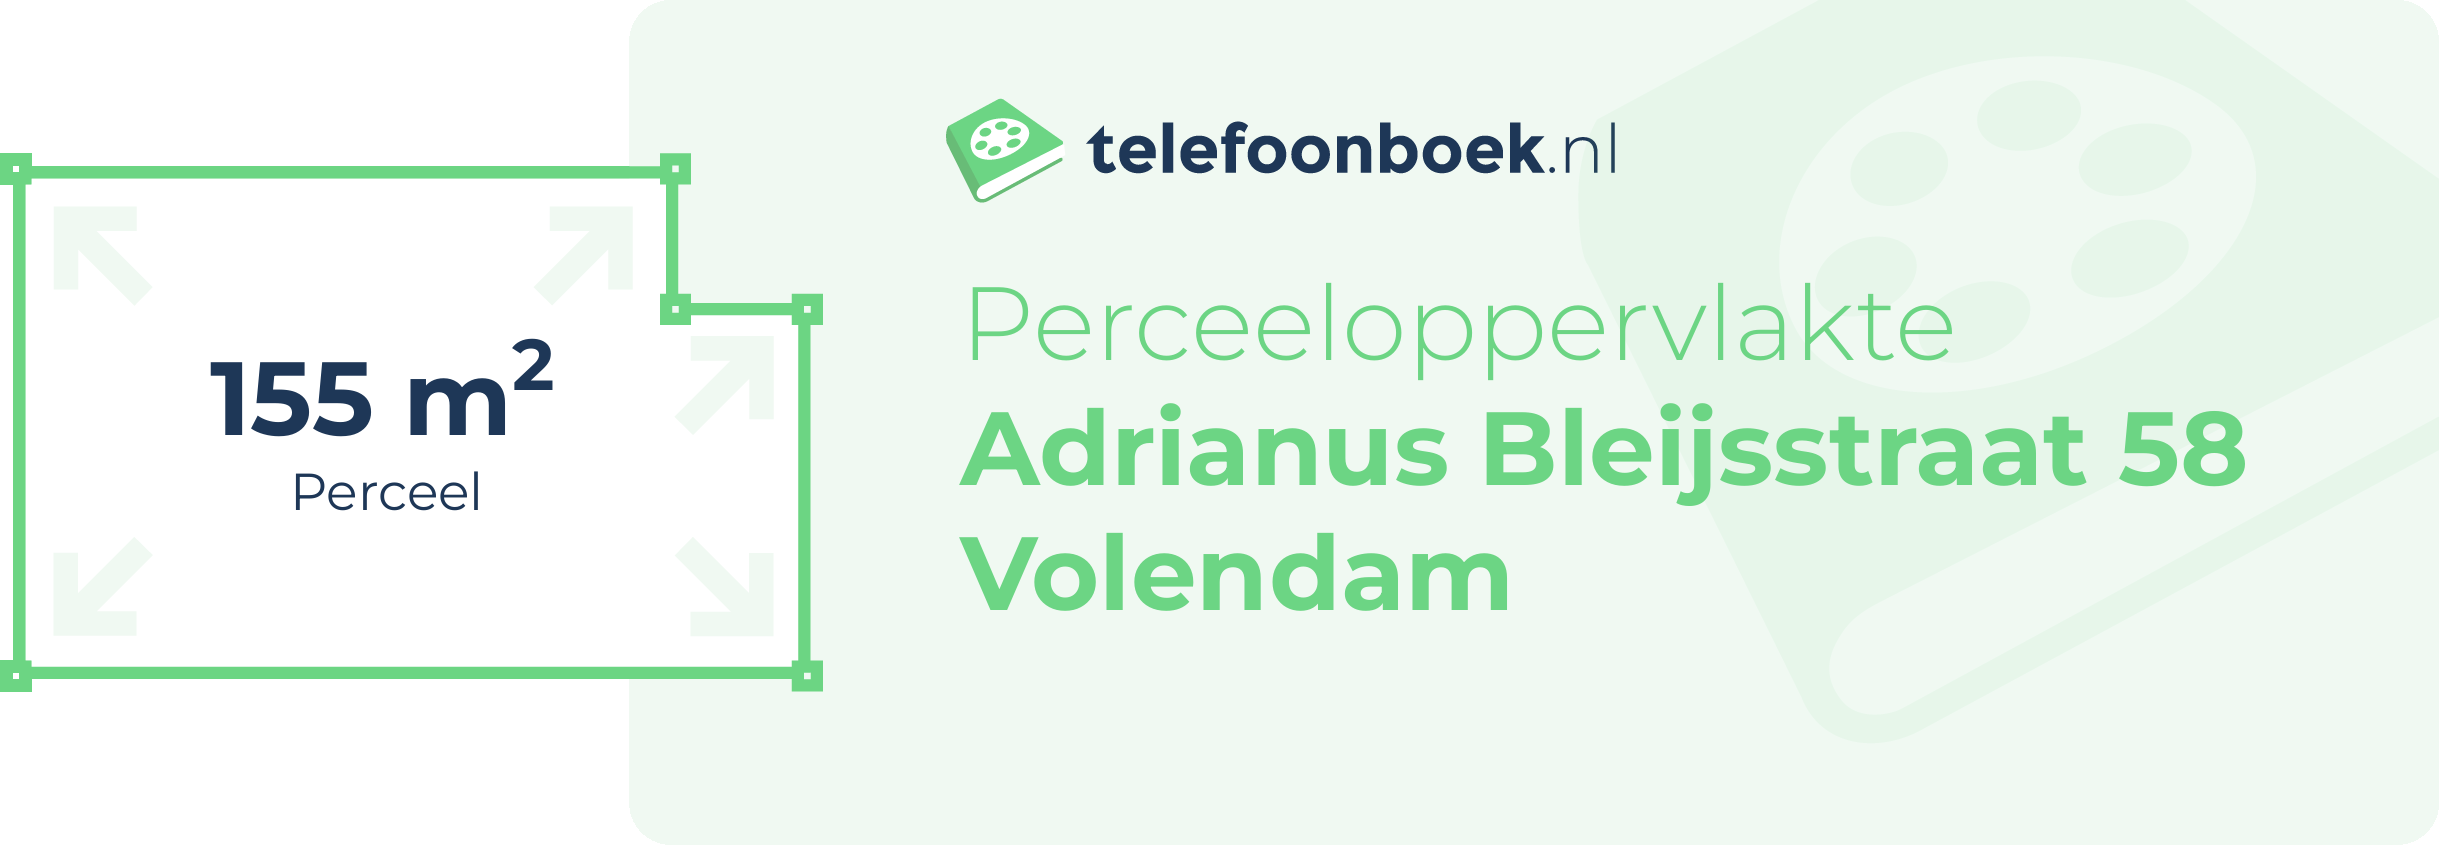 Perceeloppervlakte Adrianus Bleijsstraat 58 Volendam